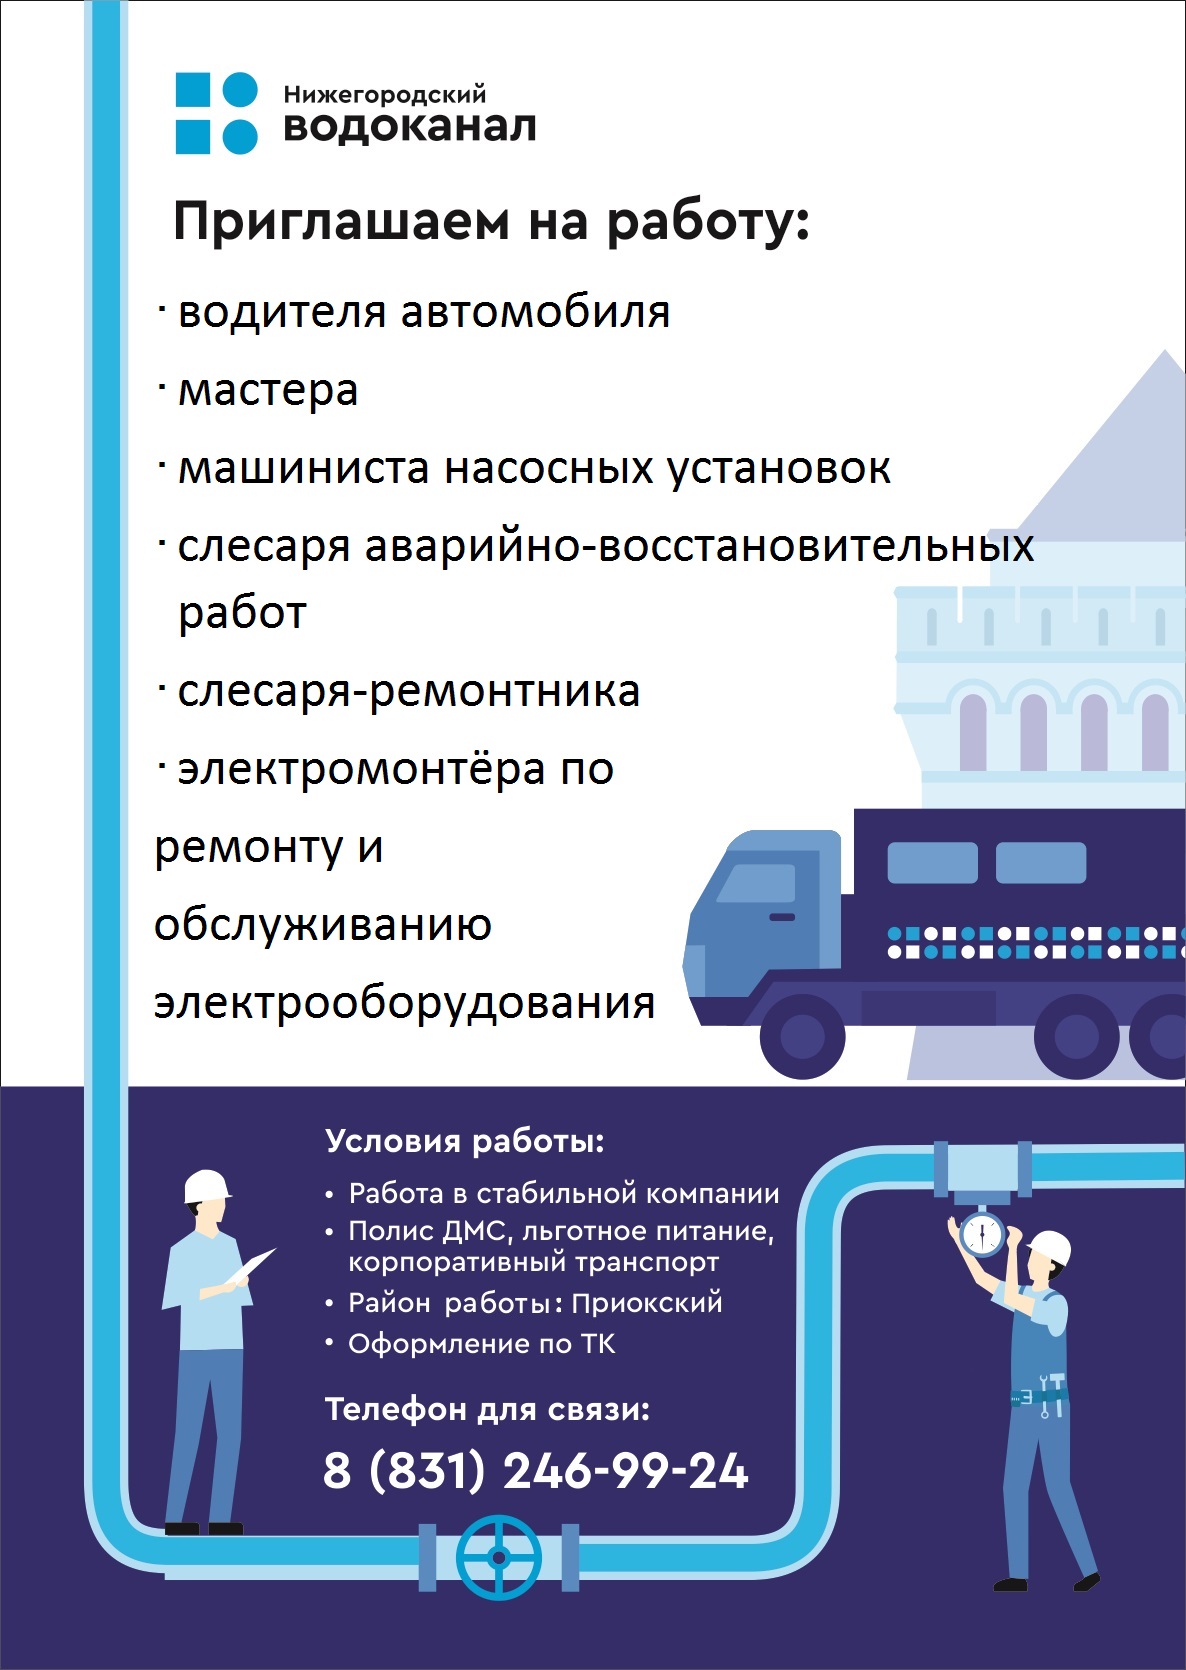 В связи с расширением зоны обслуживания Нижегородский водоканал ищет новых сотрудников 